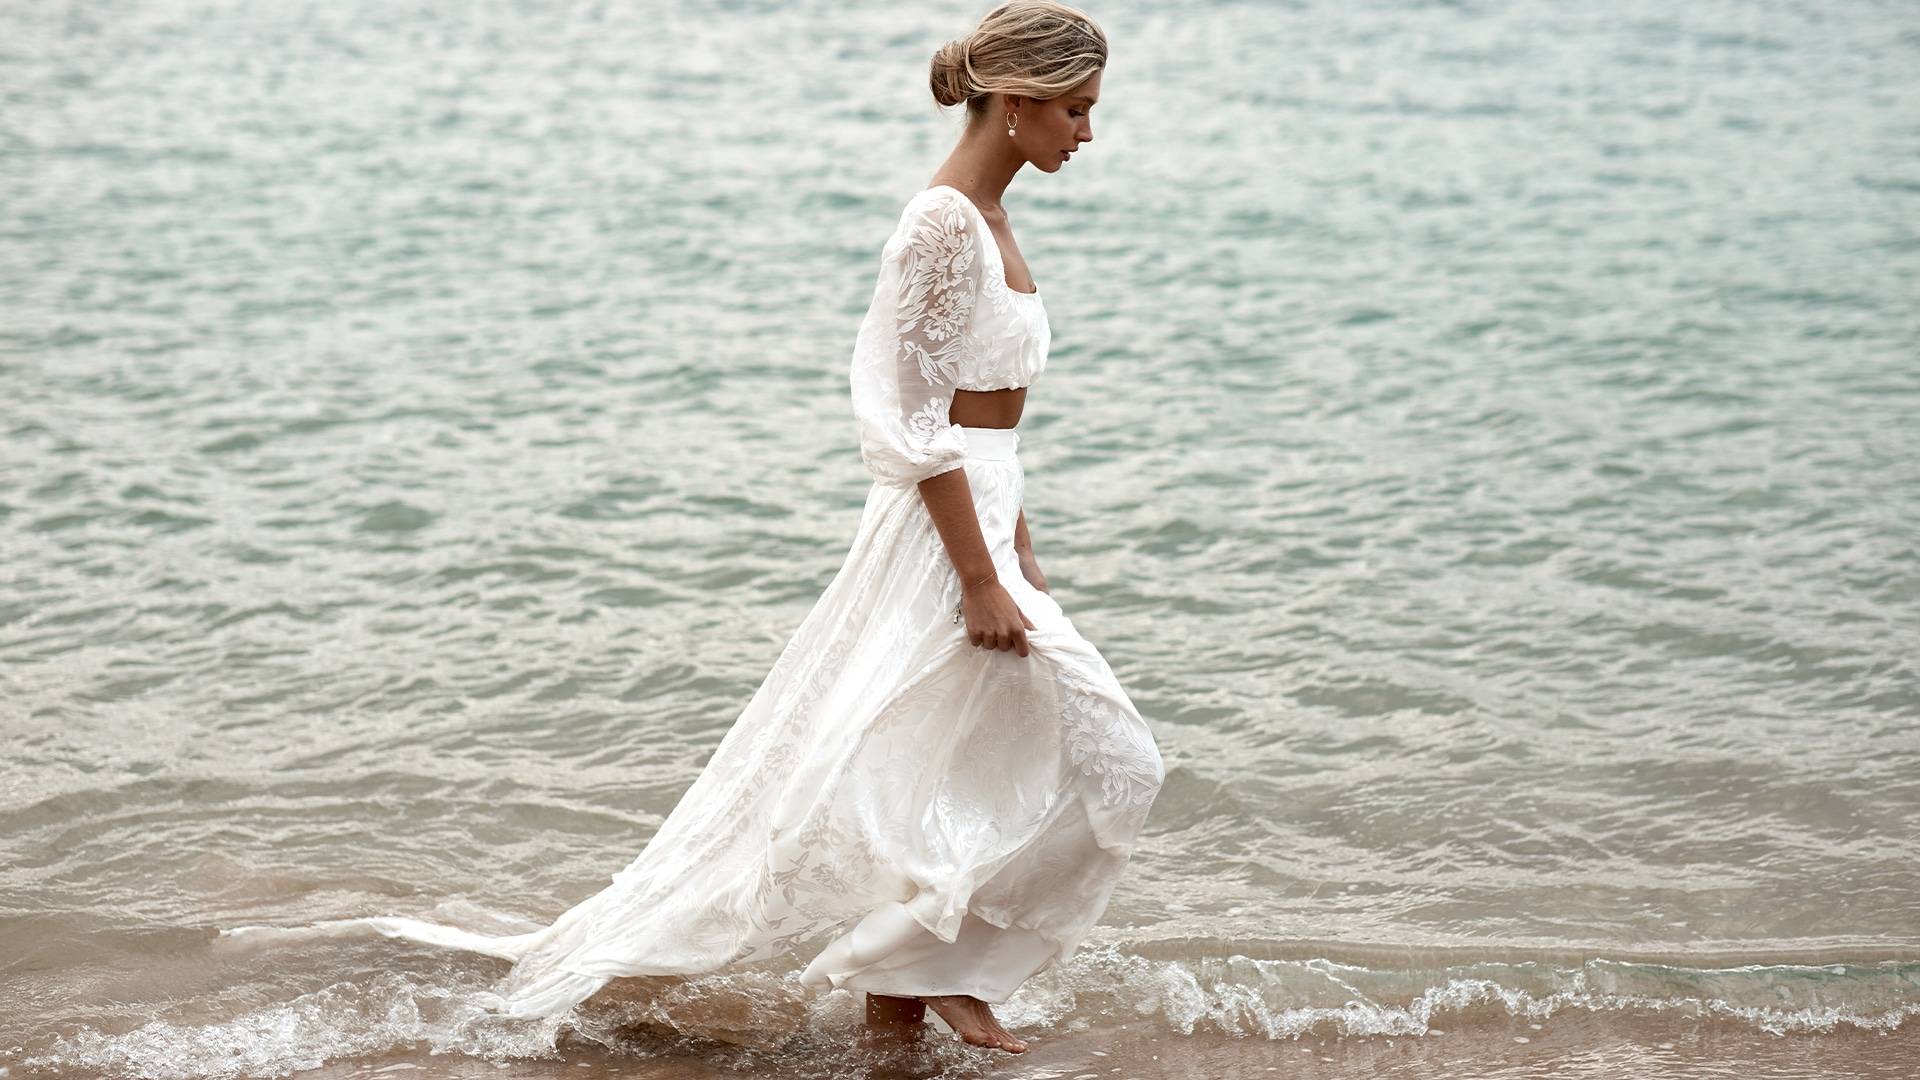 Grace Loves Lace bride walking in the ocean wearing the Behati wedding dress